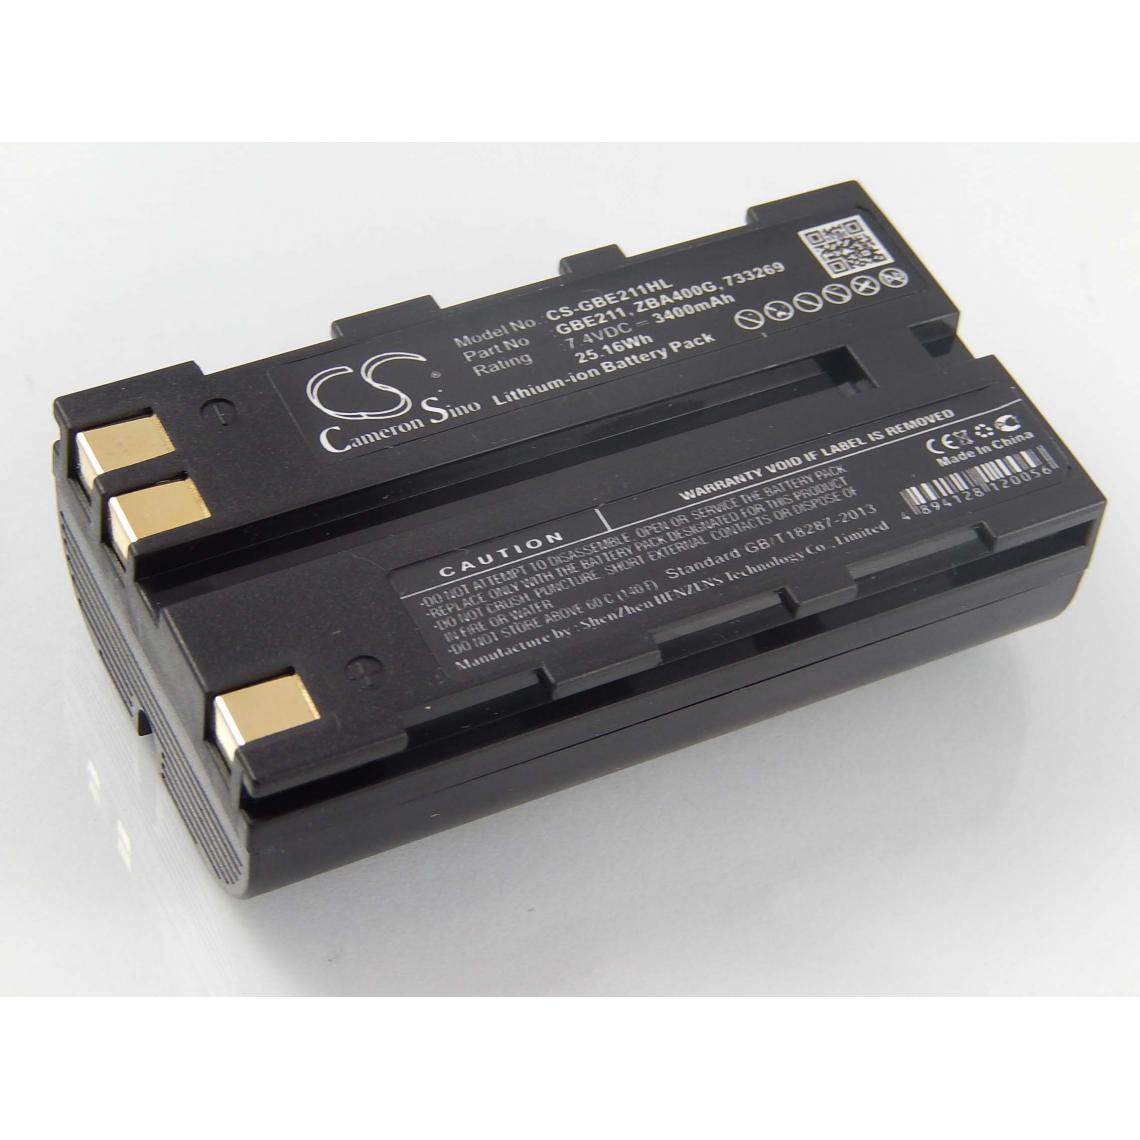 Vhbw - vhbw Batterie compatible avec Leica CS10, CS15, DNA03, DNA10 dispositif de mesure laser, outil de mesure (3400mAh, 7,4V, Li-ion) - Piles rechargeables